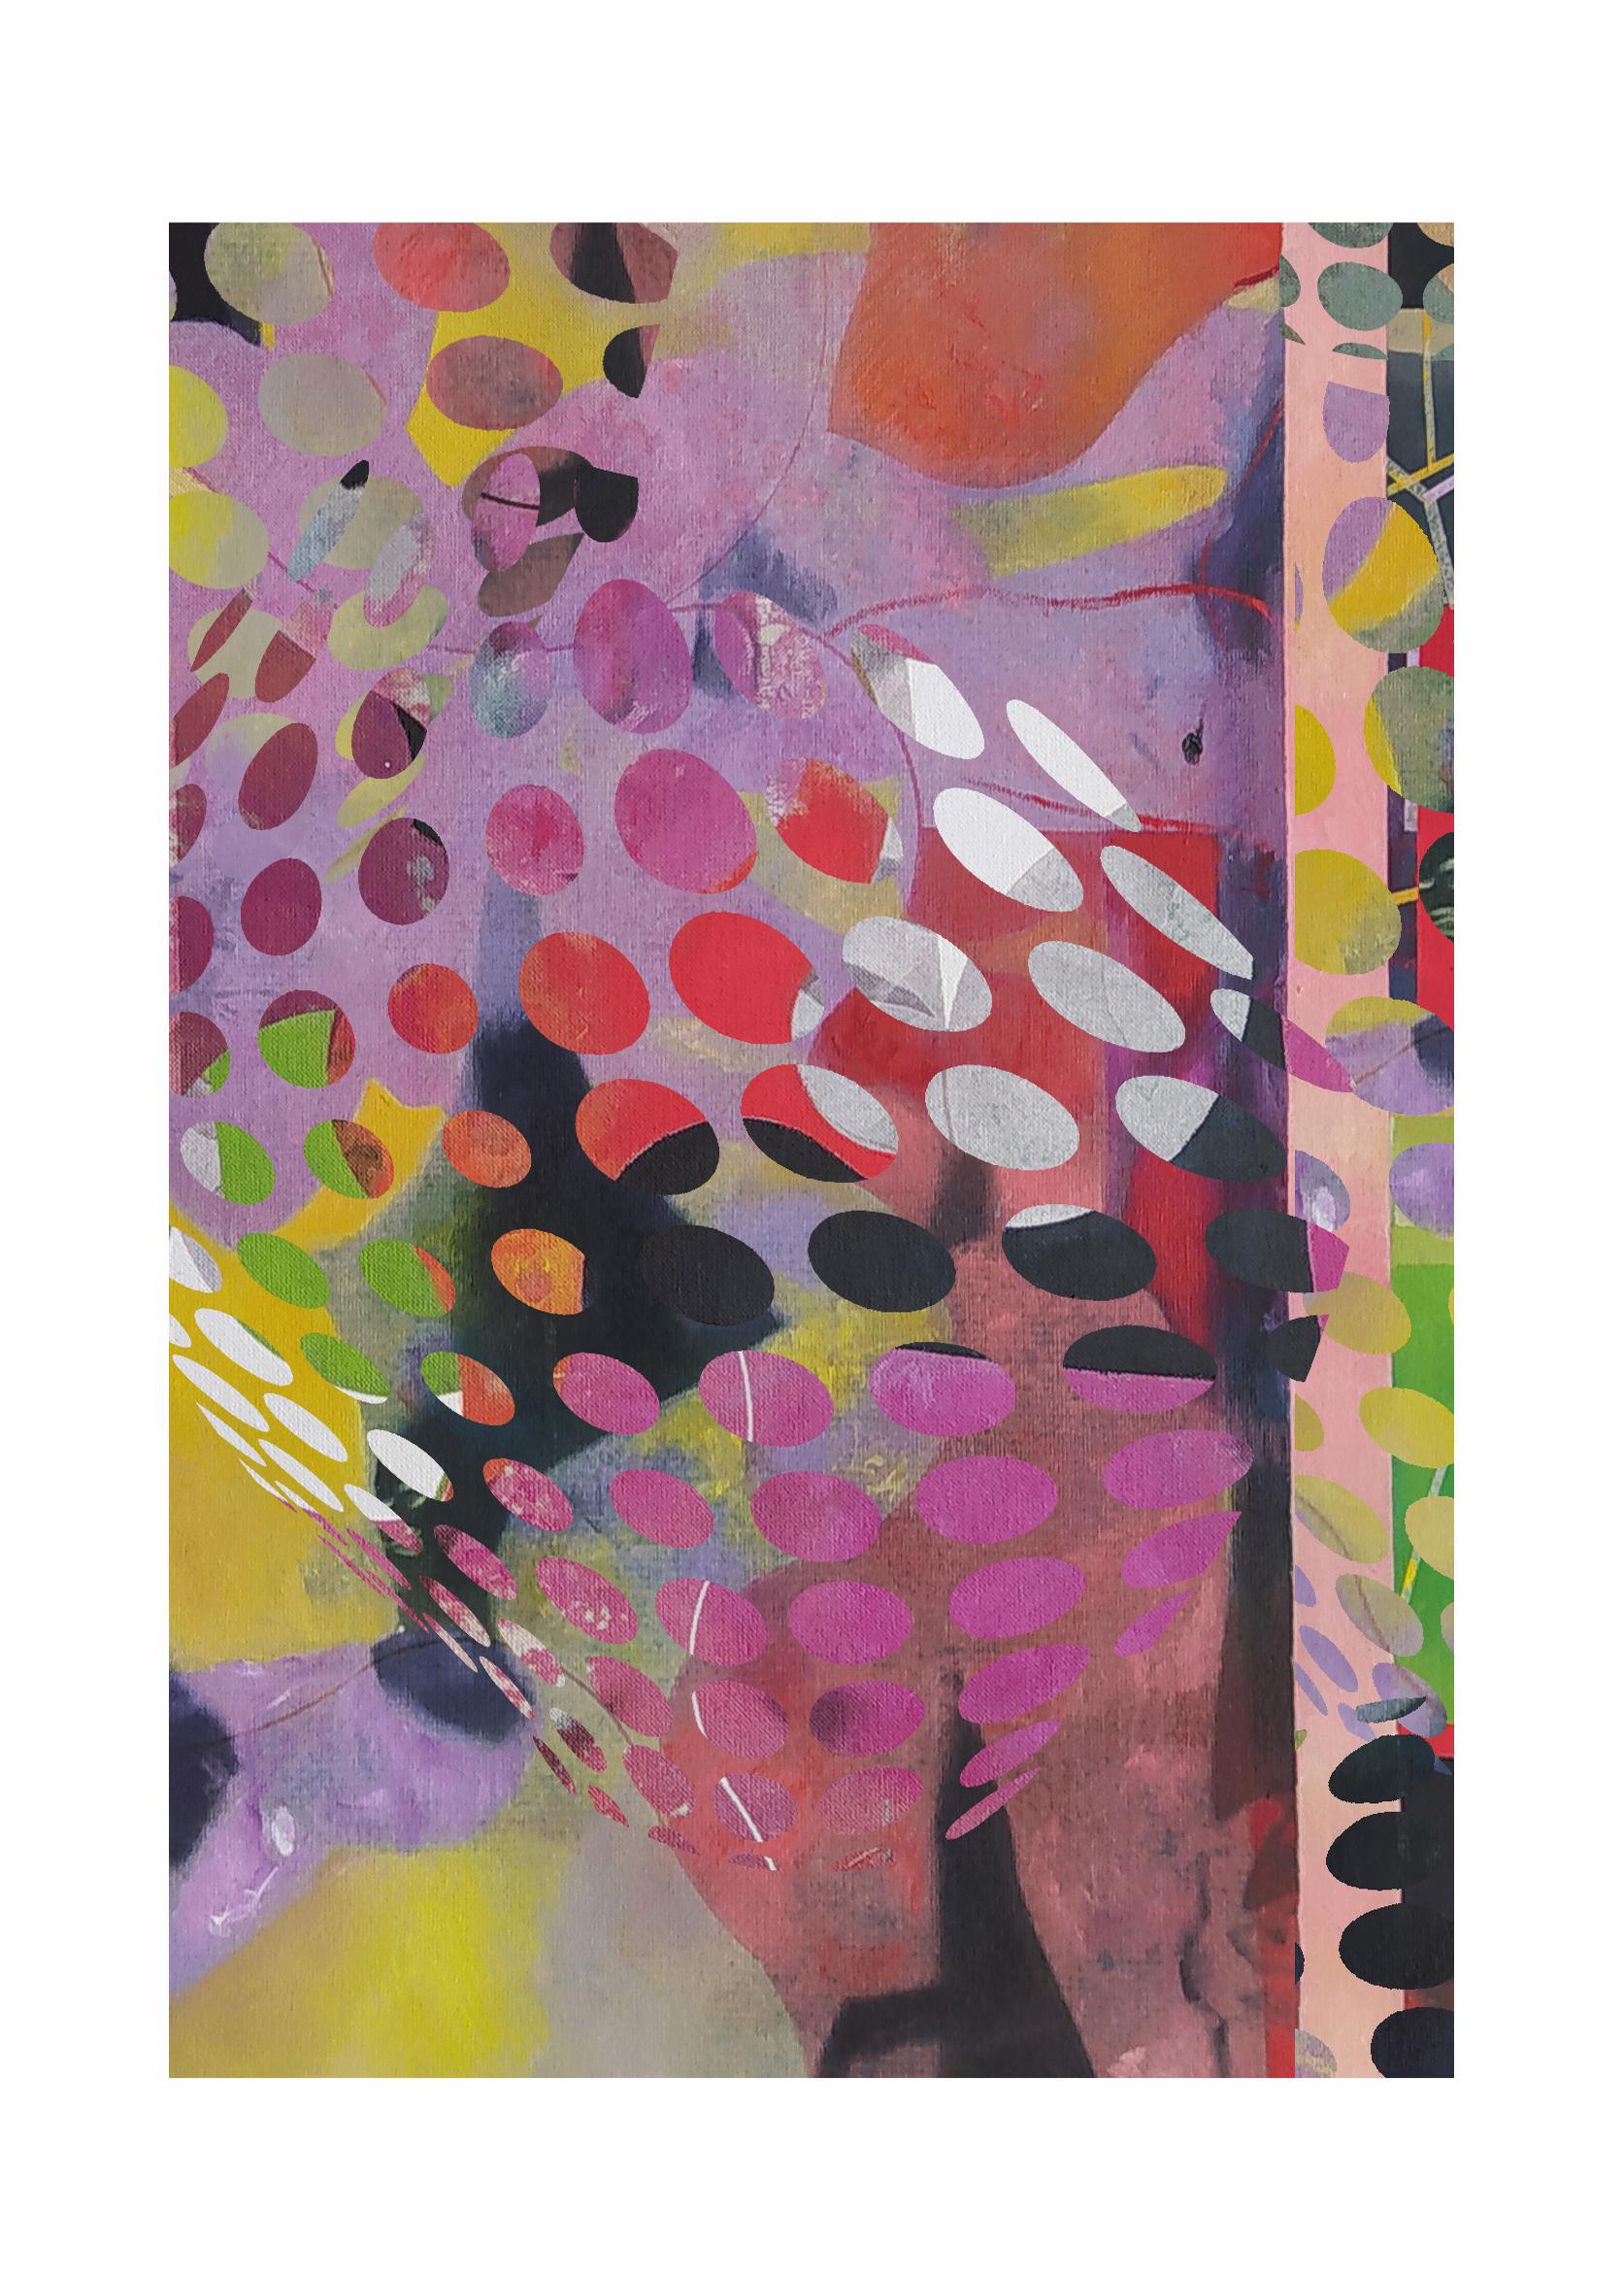 Francisco Nicolás Abstract Print – Blumen6 – Zeitgenössisch, Abstrakt, Minimalismus, Moderne, Expressionismus, Surrealistisch